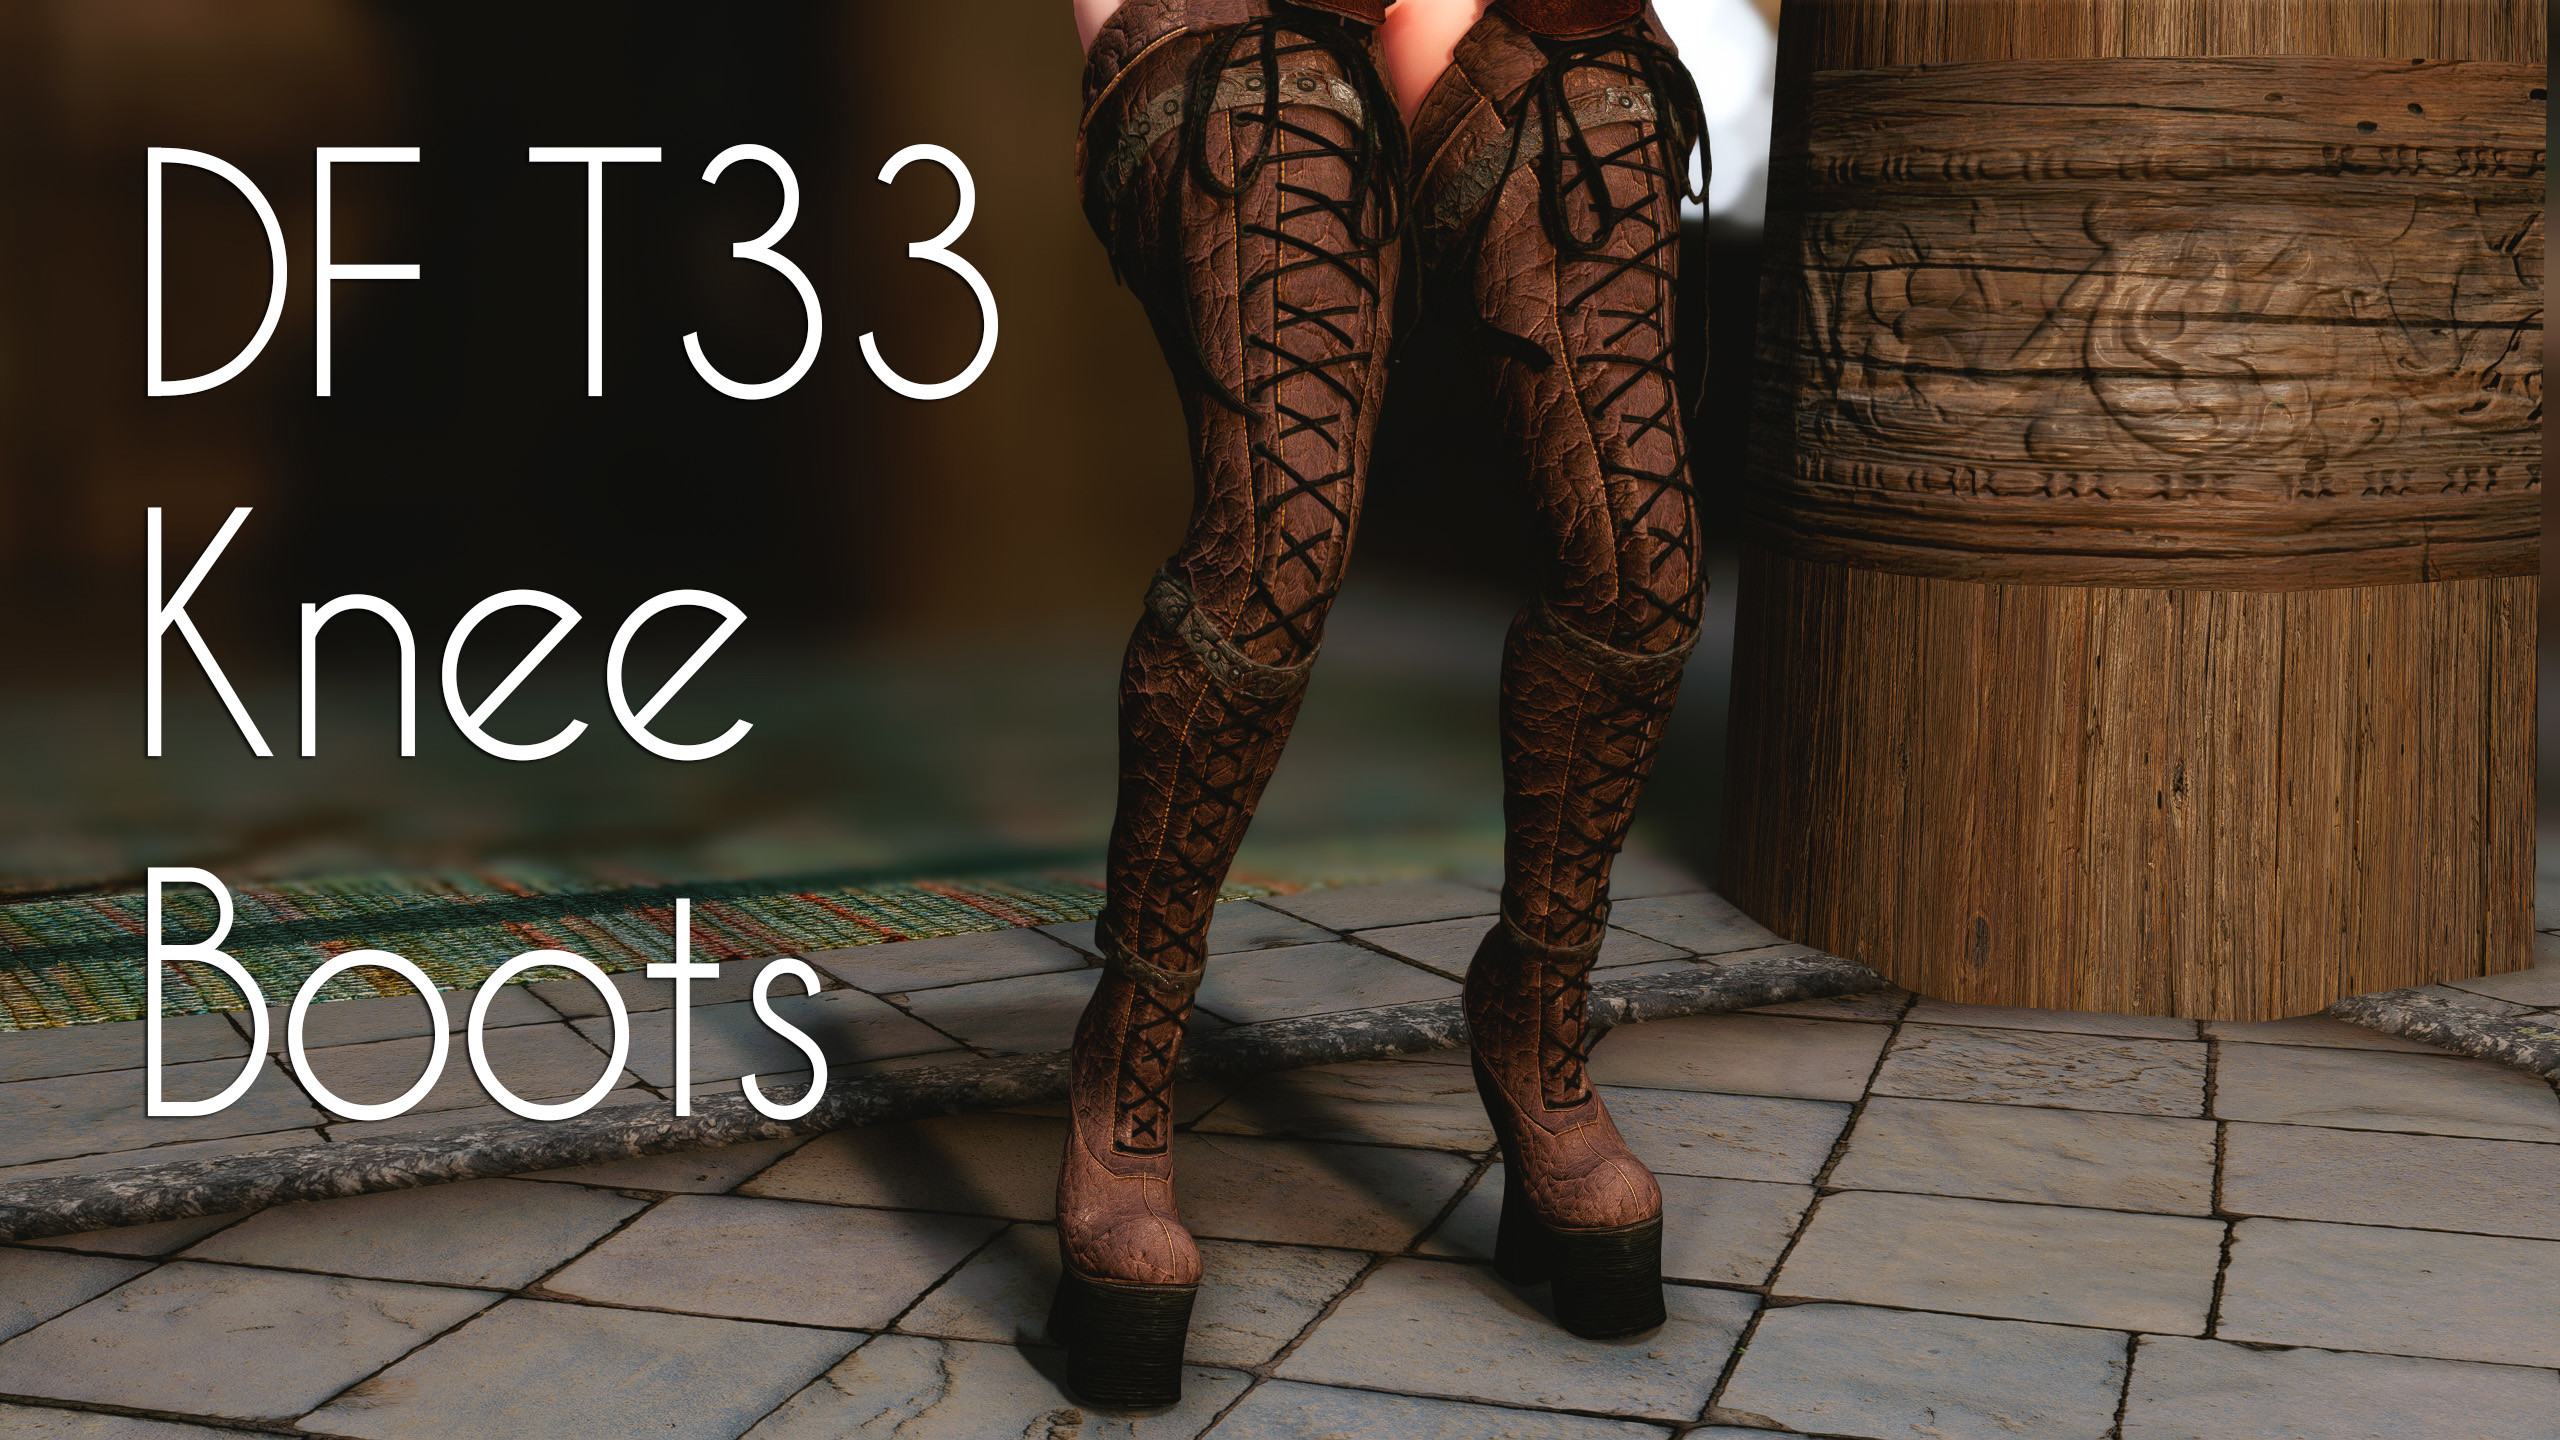 DF T33 Knee Boots